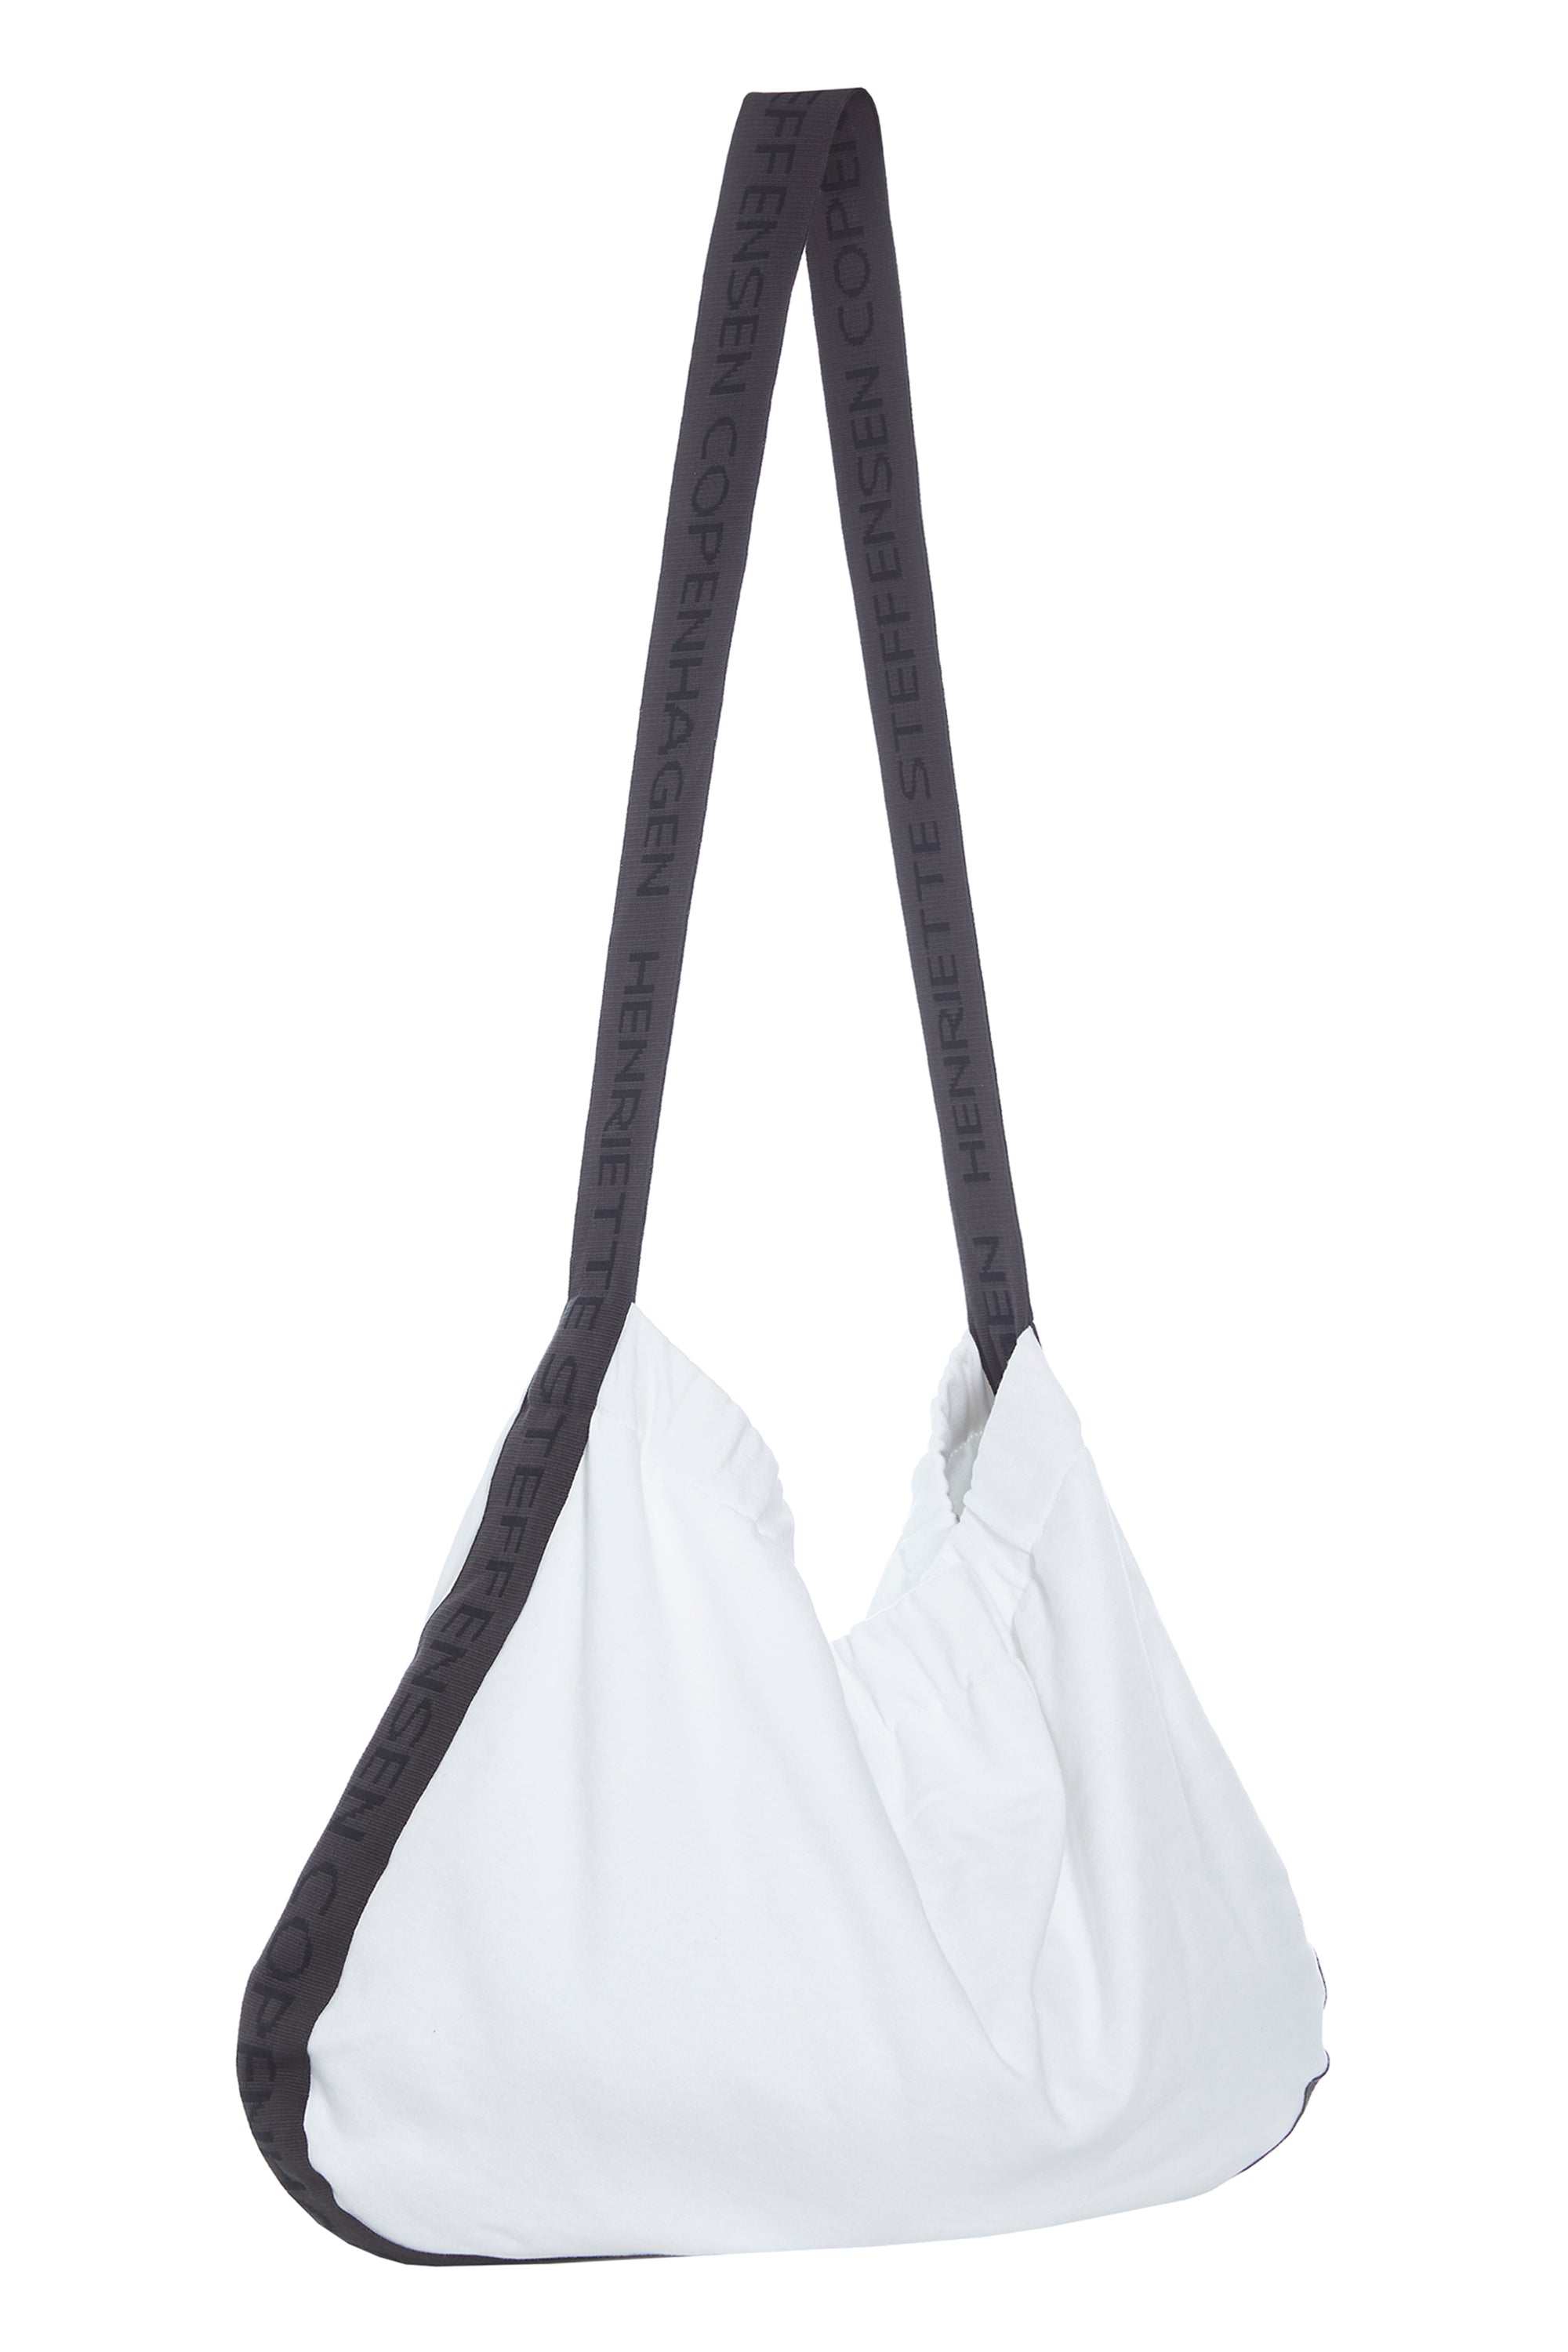 HENRIETTE STEFFENSEN COPENHAGEN BAG - 74501 BAGS cotton WHITE 816